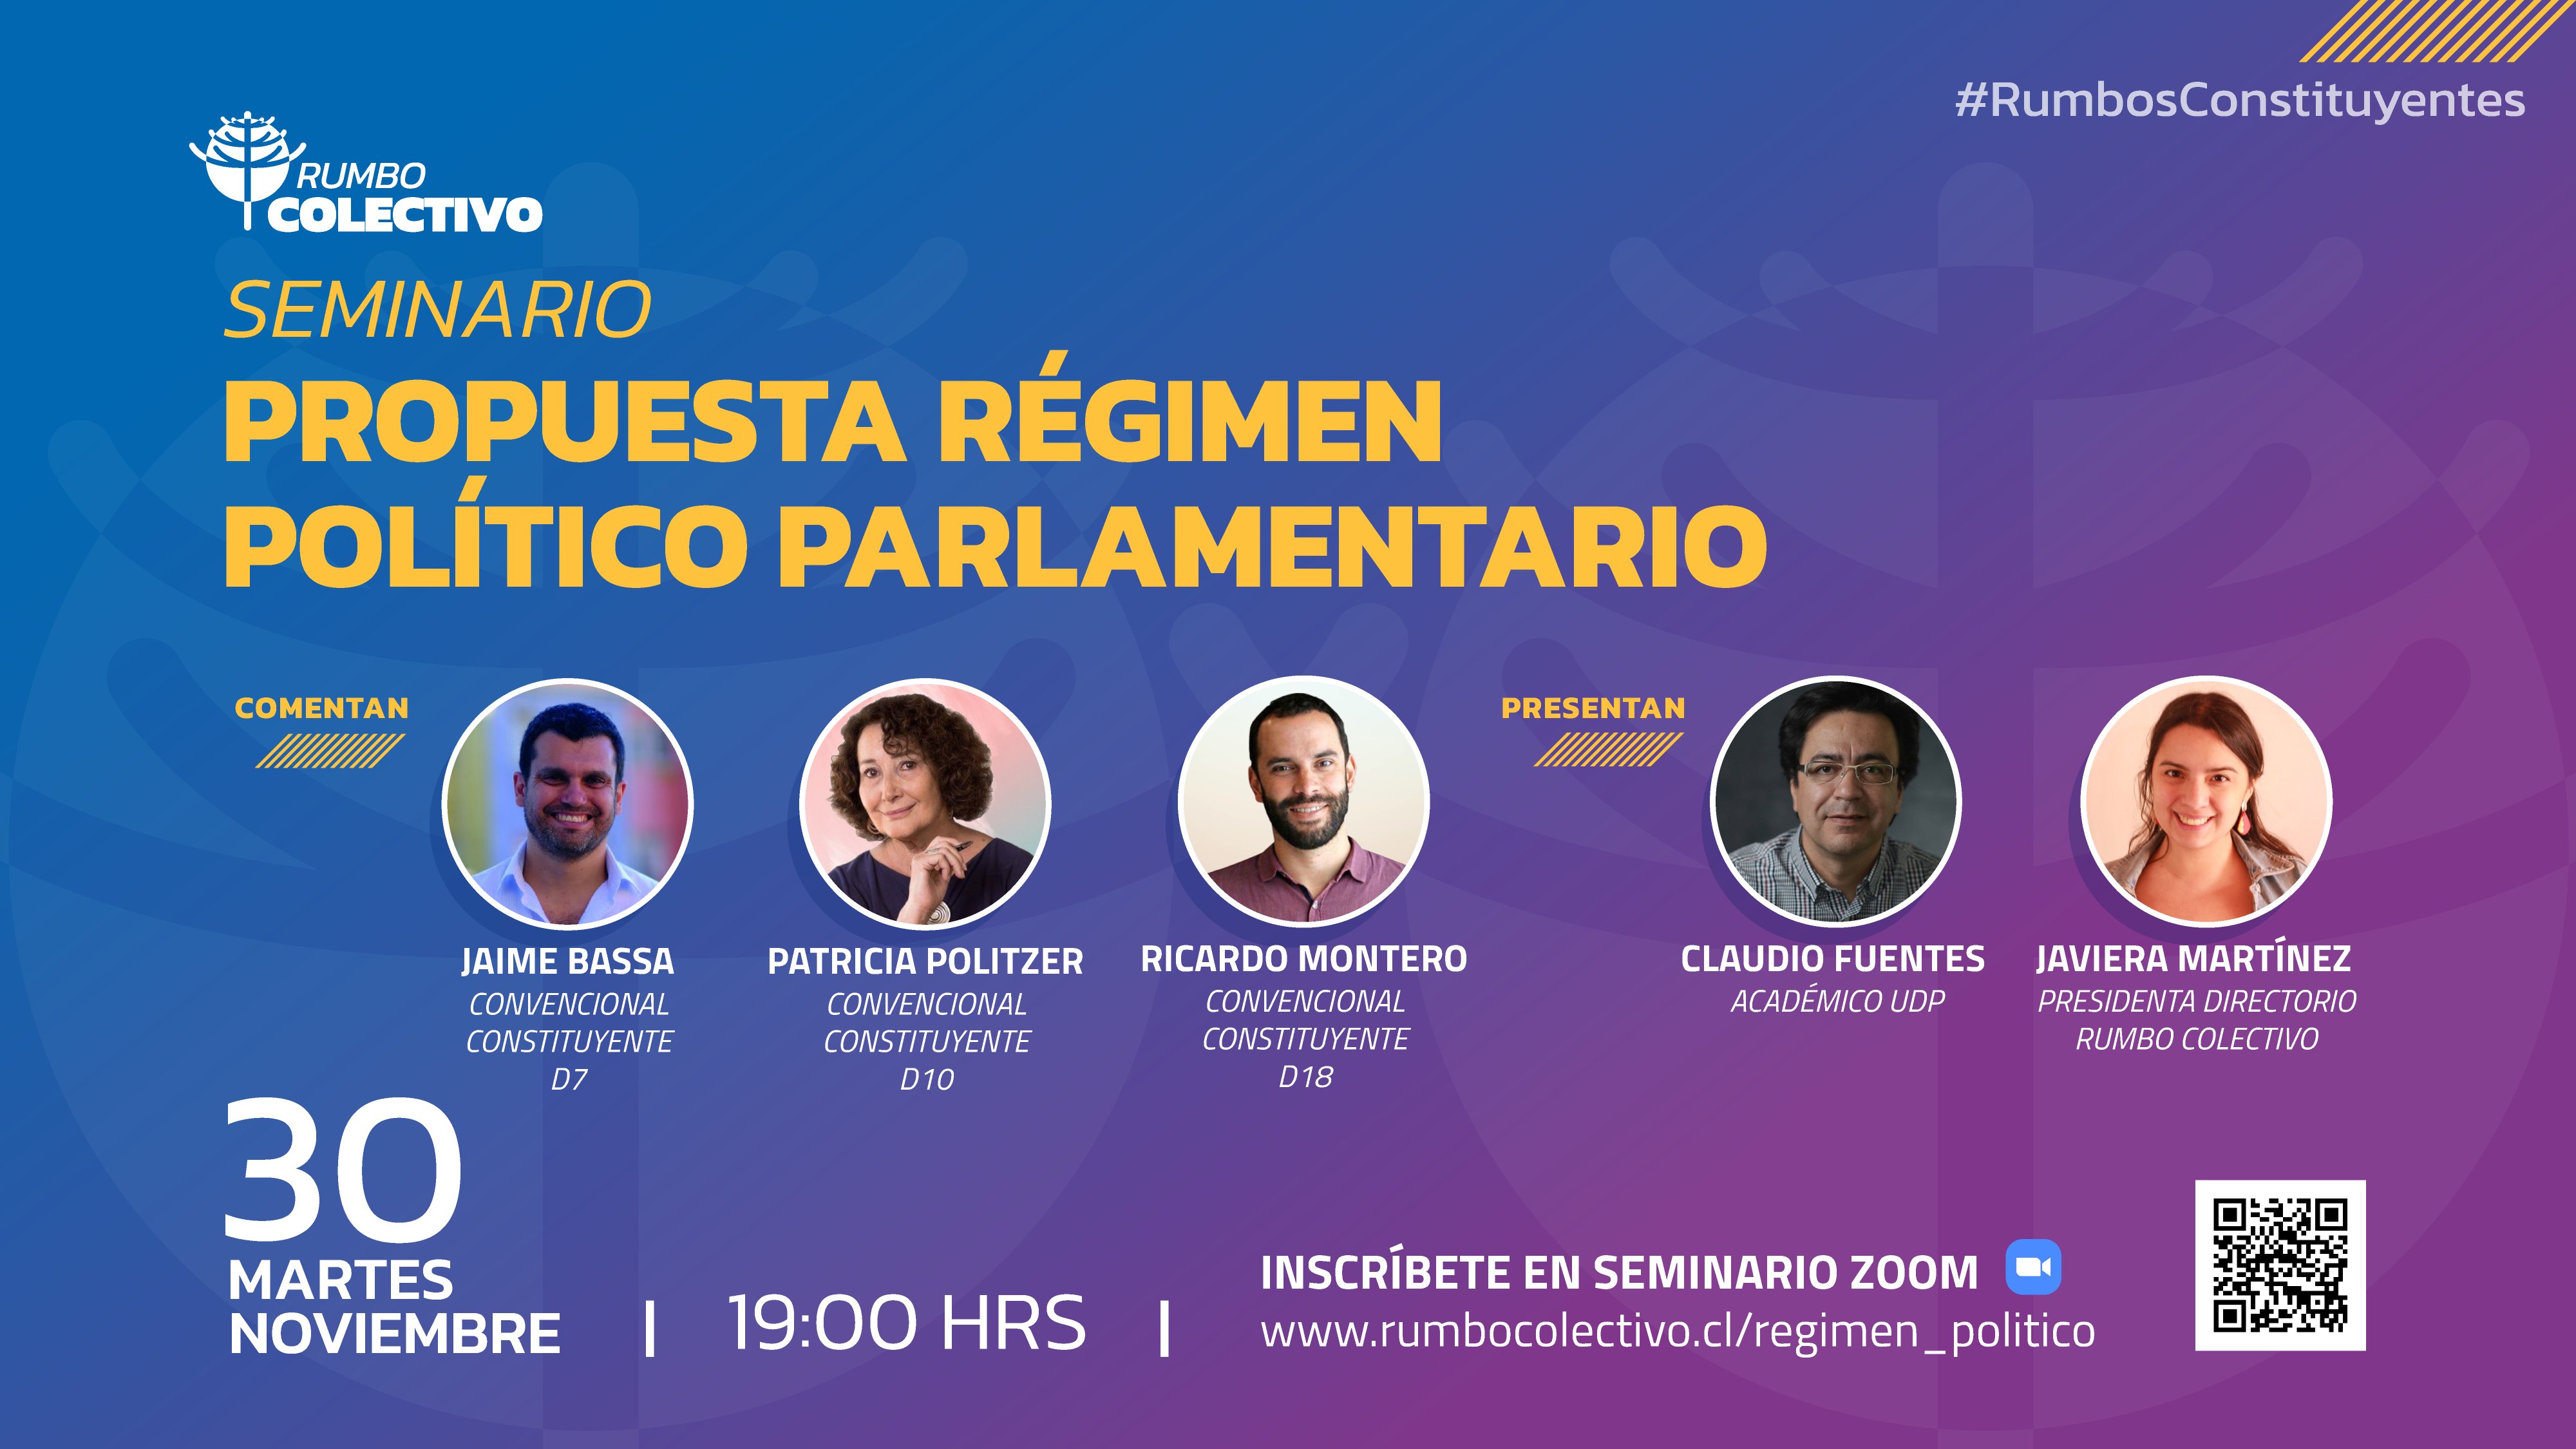 Rumbo Colectivo invita al seminario: "Propuesta de Régimen Político Parlamentario"